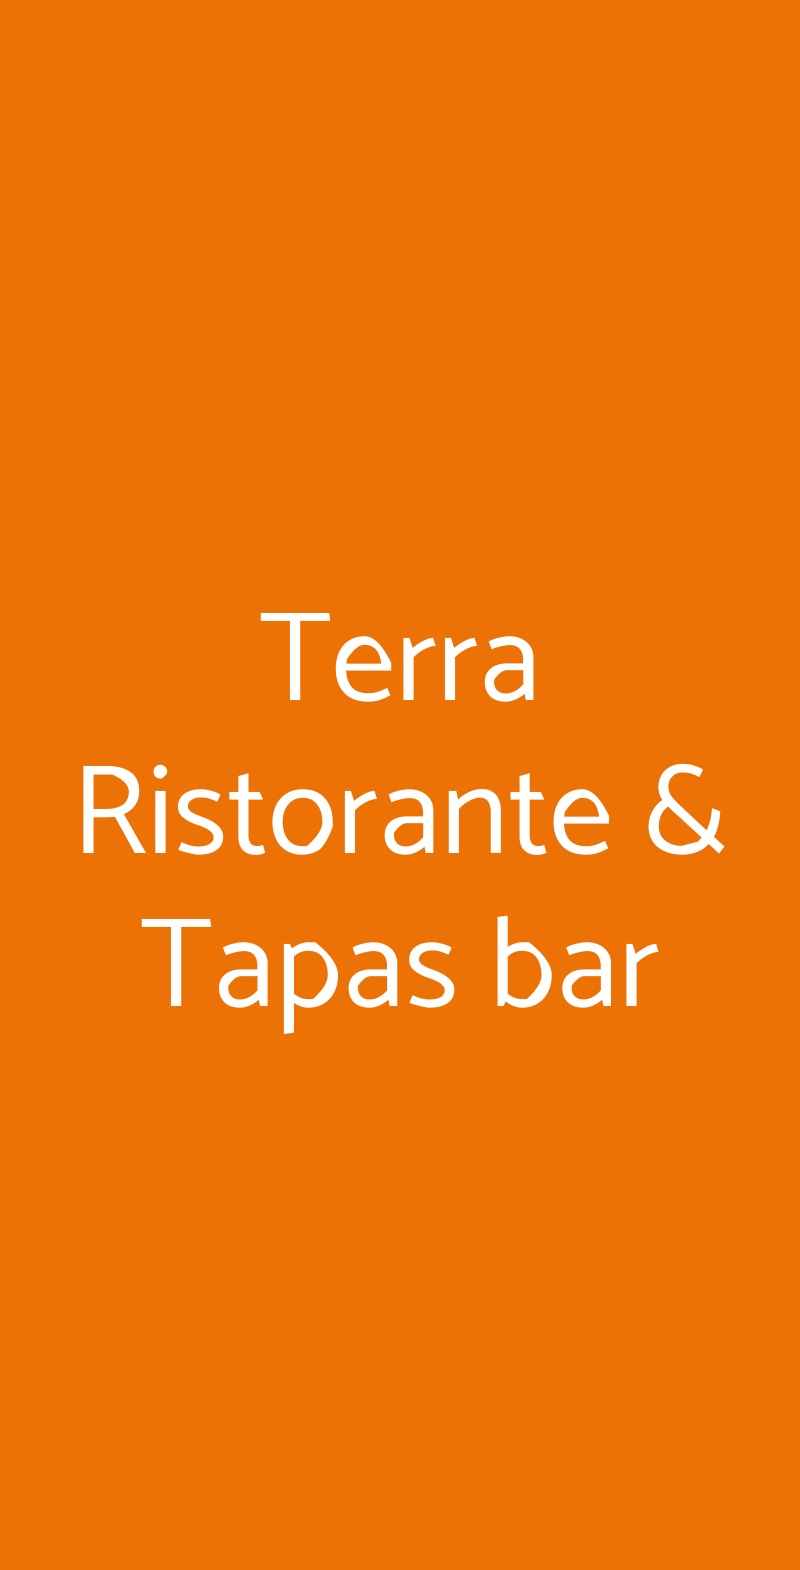 Terra Ristorante & Tapas bar Lecce menù 1 pagina